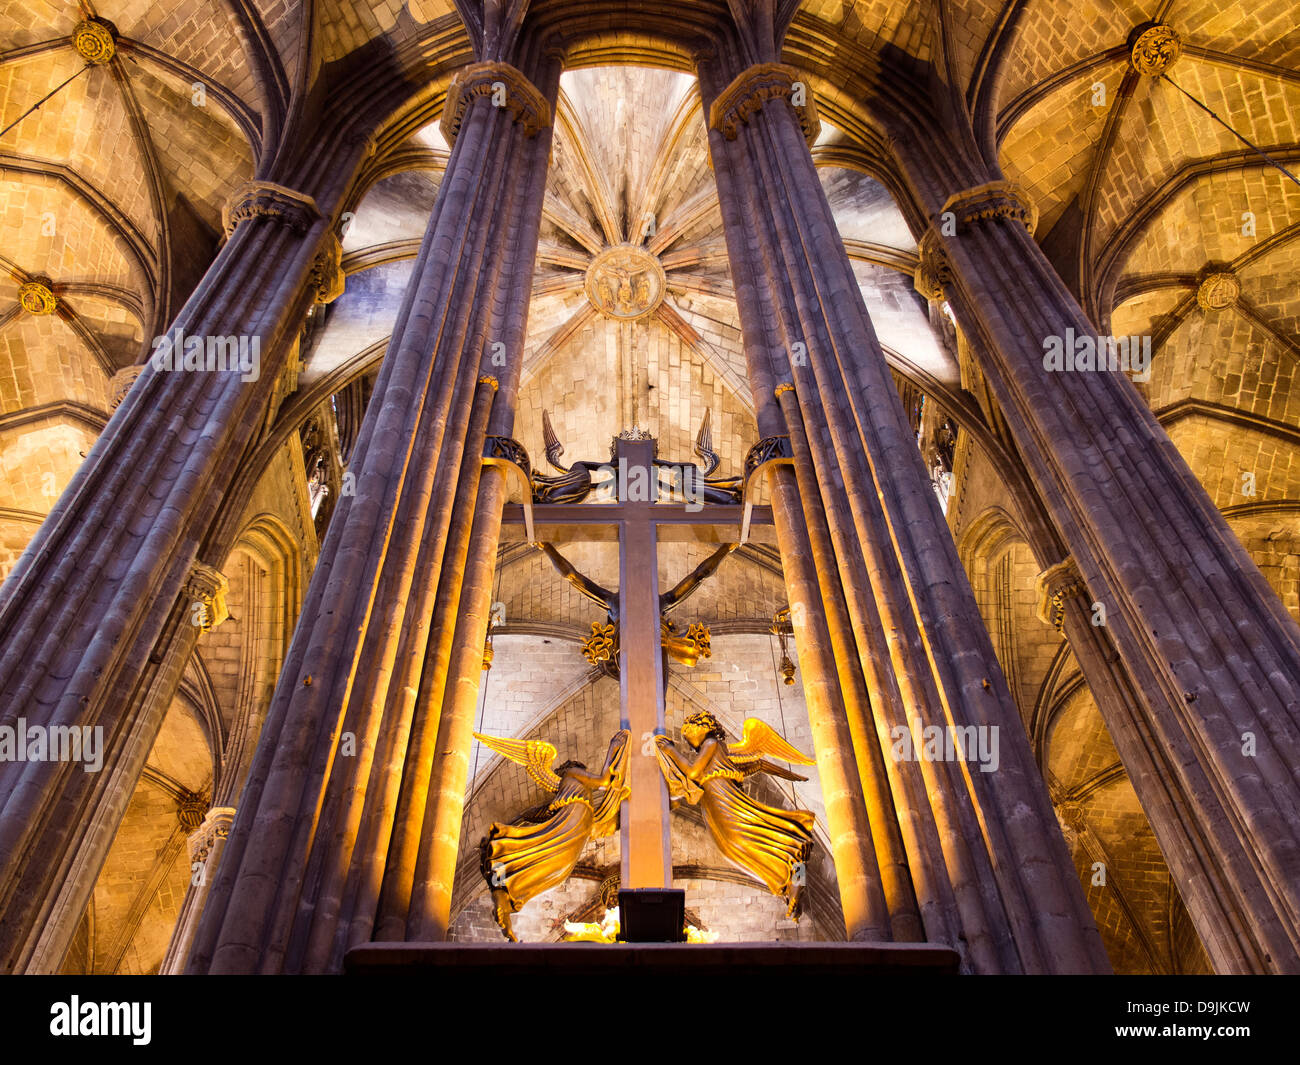 Intérieur de la cathédrale Santa Eulalia dans le quartier gothique de Barcelone, Espagne 1 Banque D'Images